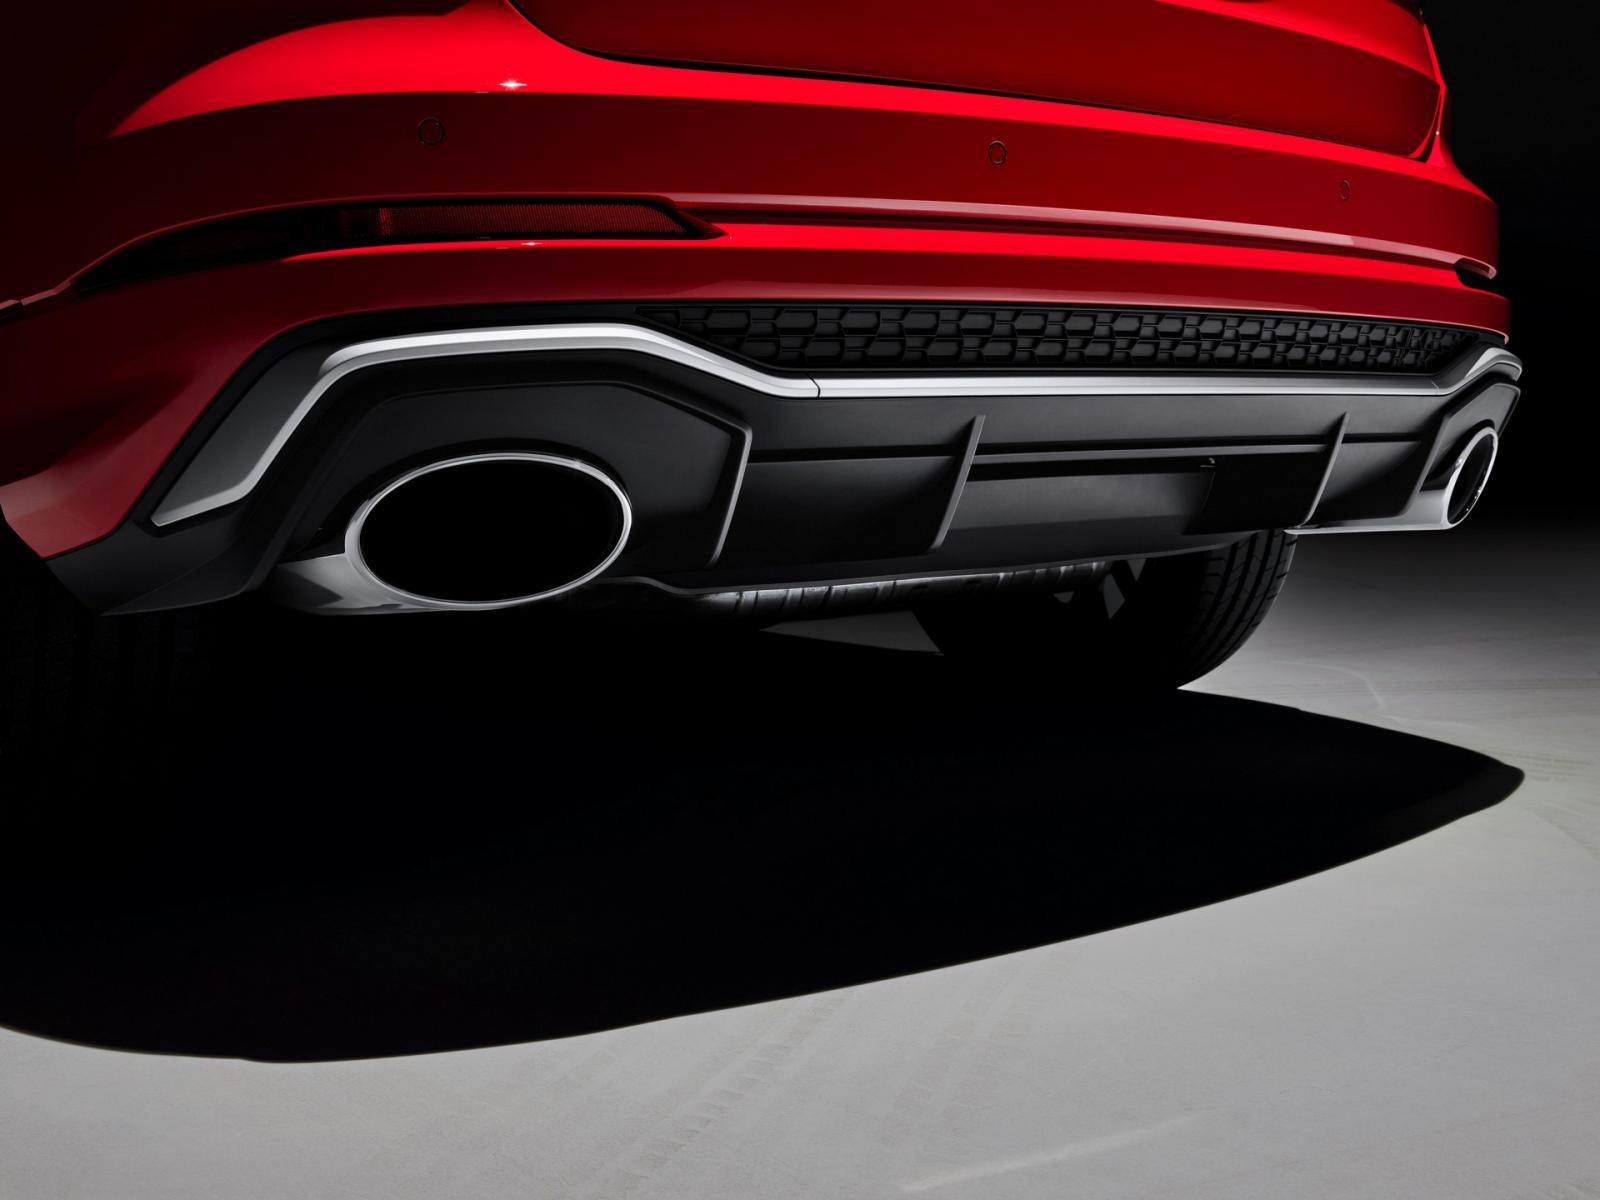  Bộ ống xả kép hình bầu dục của Audi RS Q3 và RS Q3 Sportback.